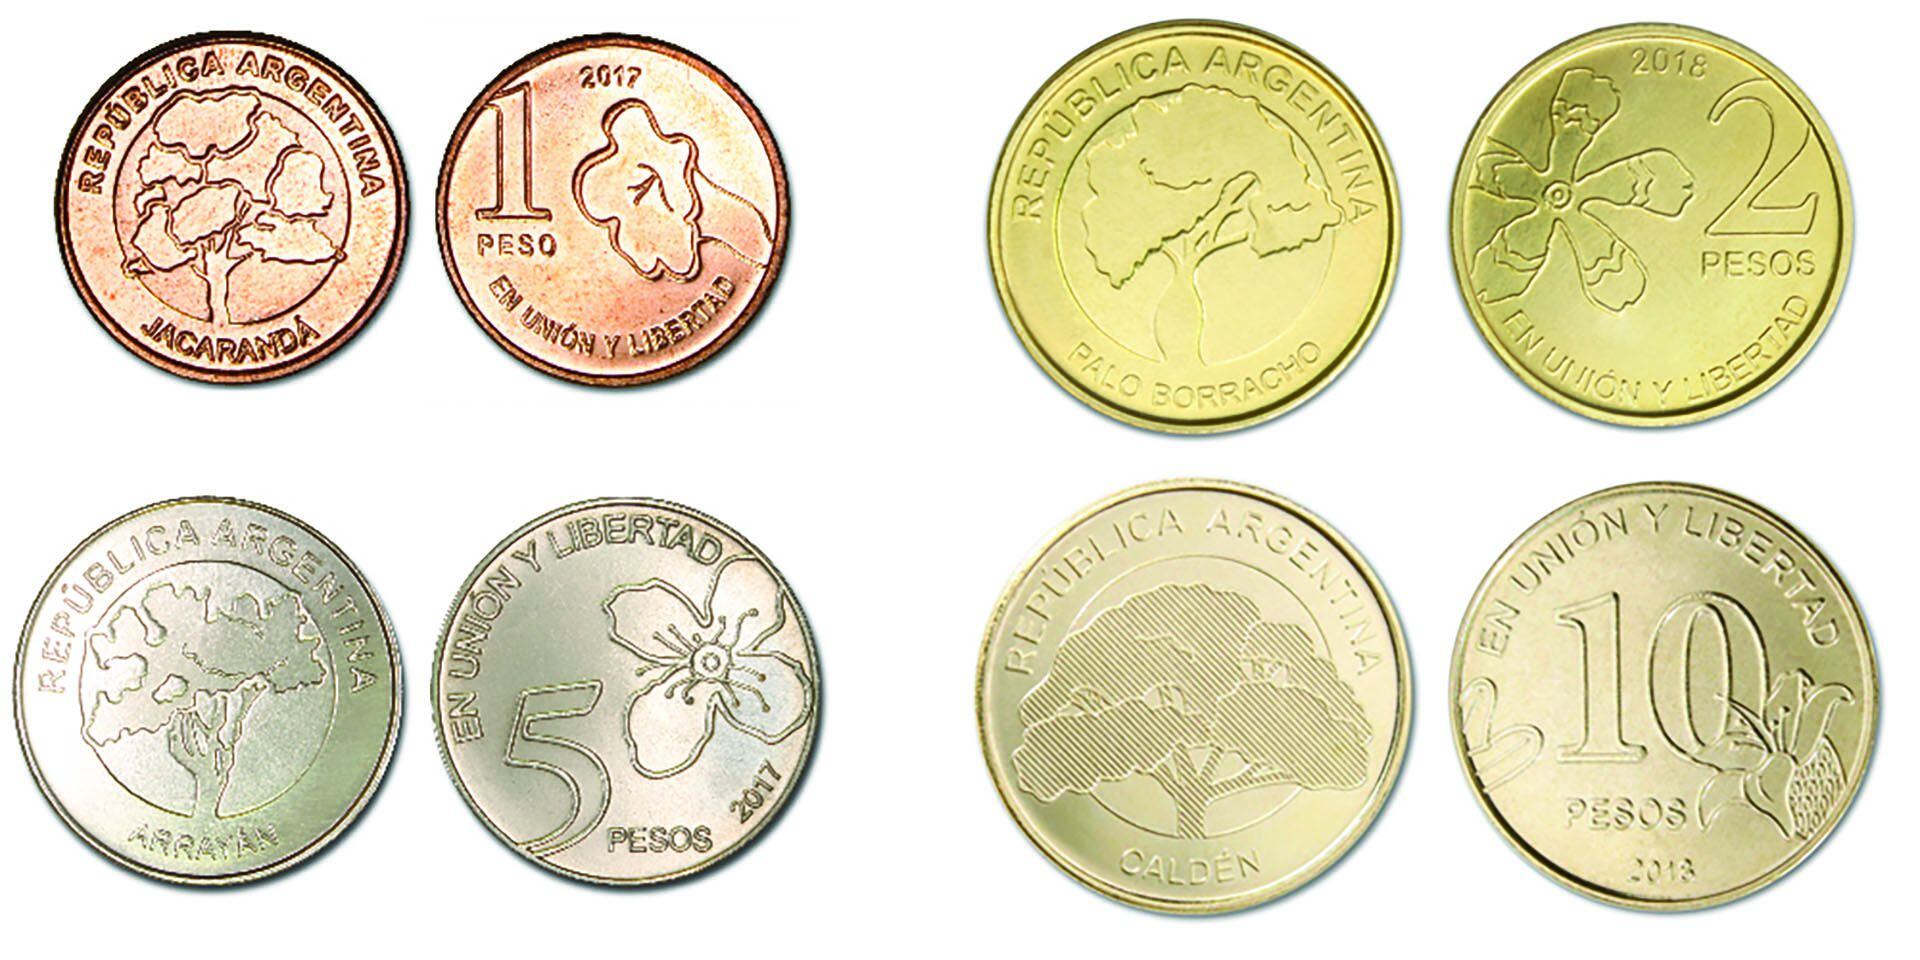 Las monedas de la línea "Arboles", lanzada por el BCRA en 2018, están hechas de acero en reemplazo de metales más caros, como el cobre o el níquel